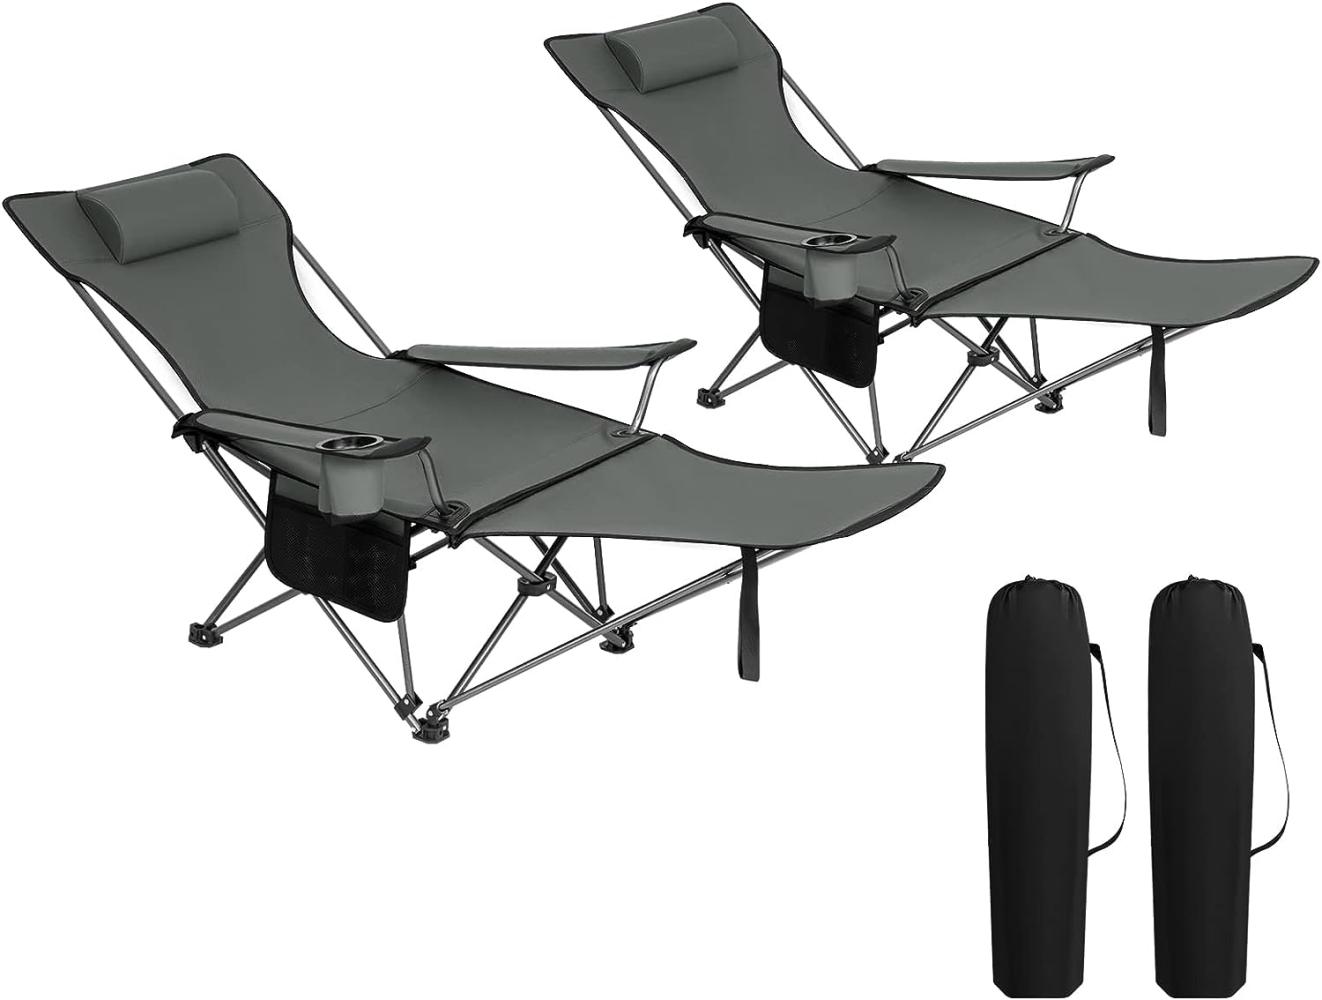 WOLTU 2er Set Campingstuhl klappbarer, Klappstuhl Liegestuhl für Outdoor, Angelstuhl Sonnenstuhl ultraleichter mit Armlehnen und Getränkehalter Grau Bild 1